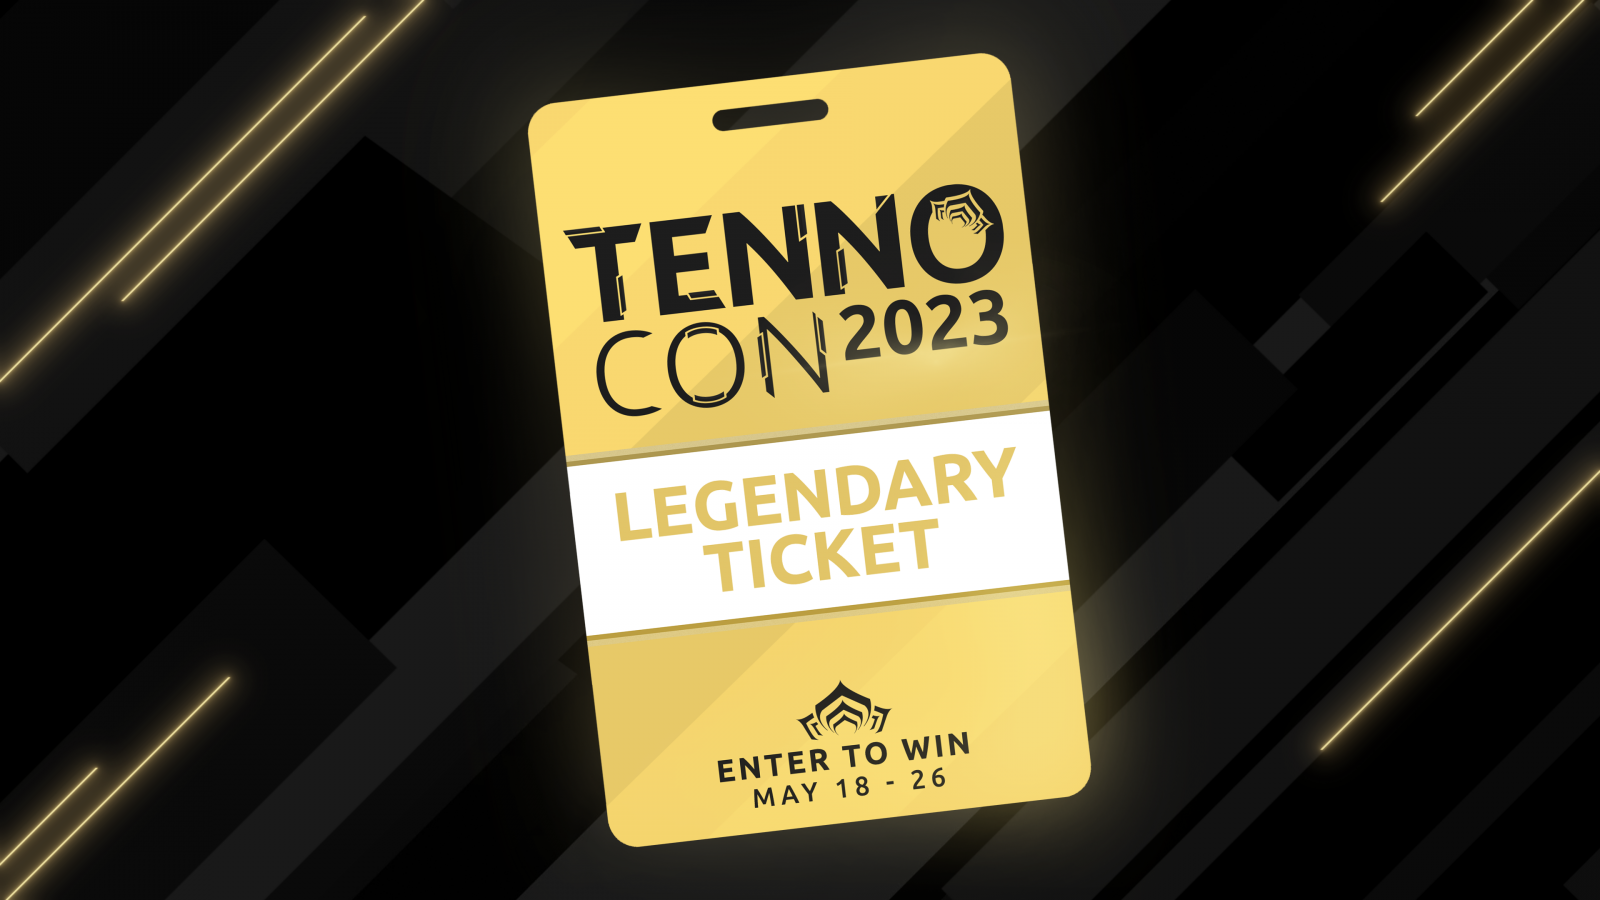 Tirage de Ticket Légendaire TennoCon 2023